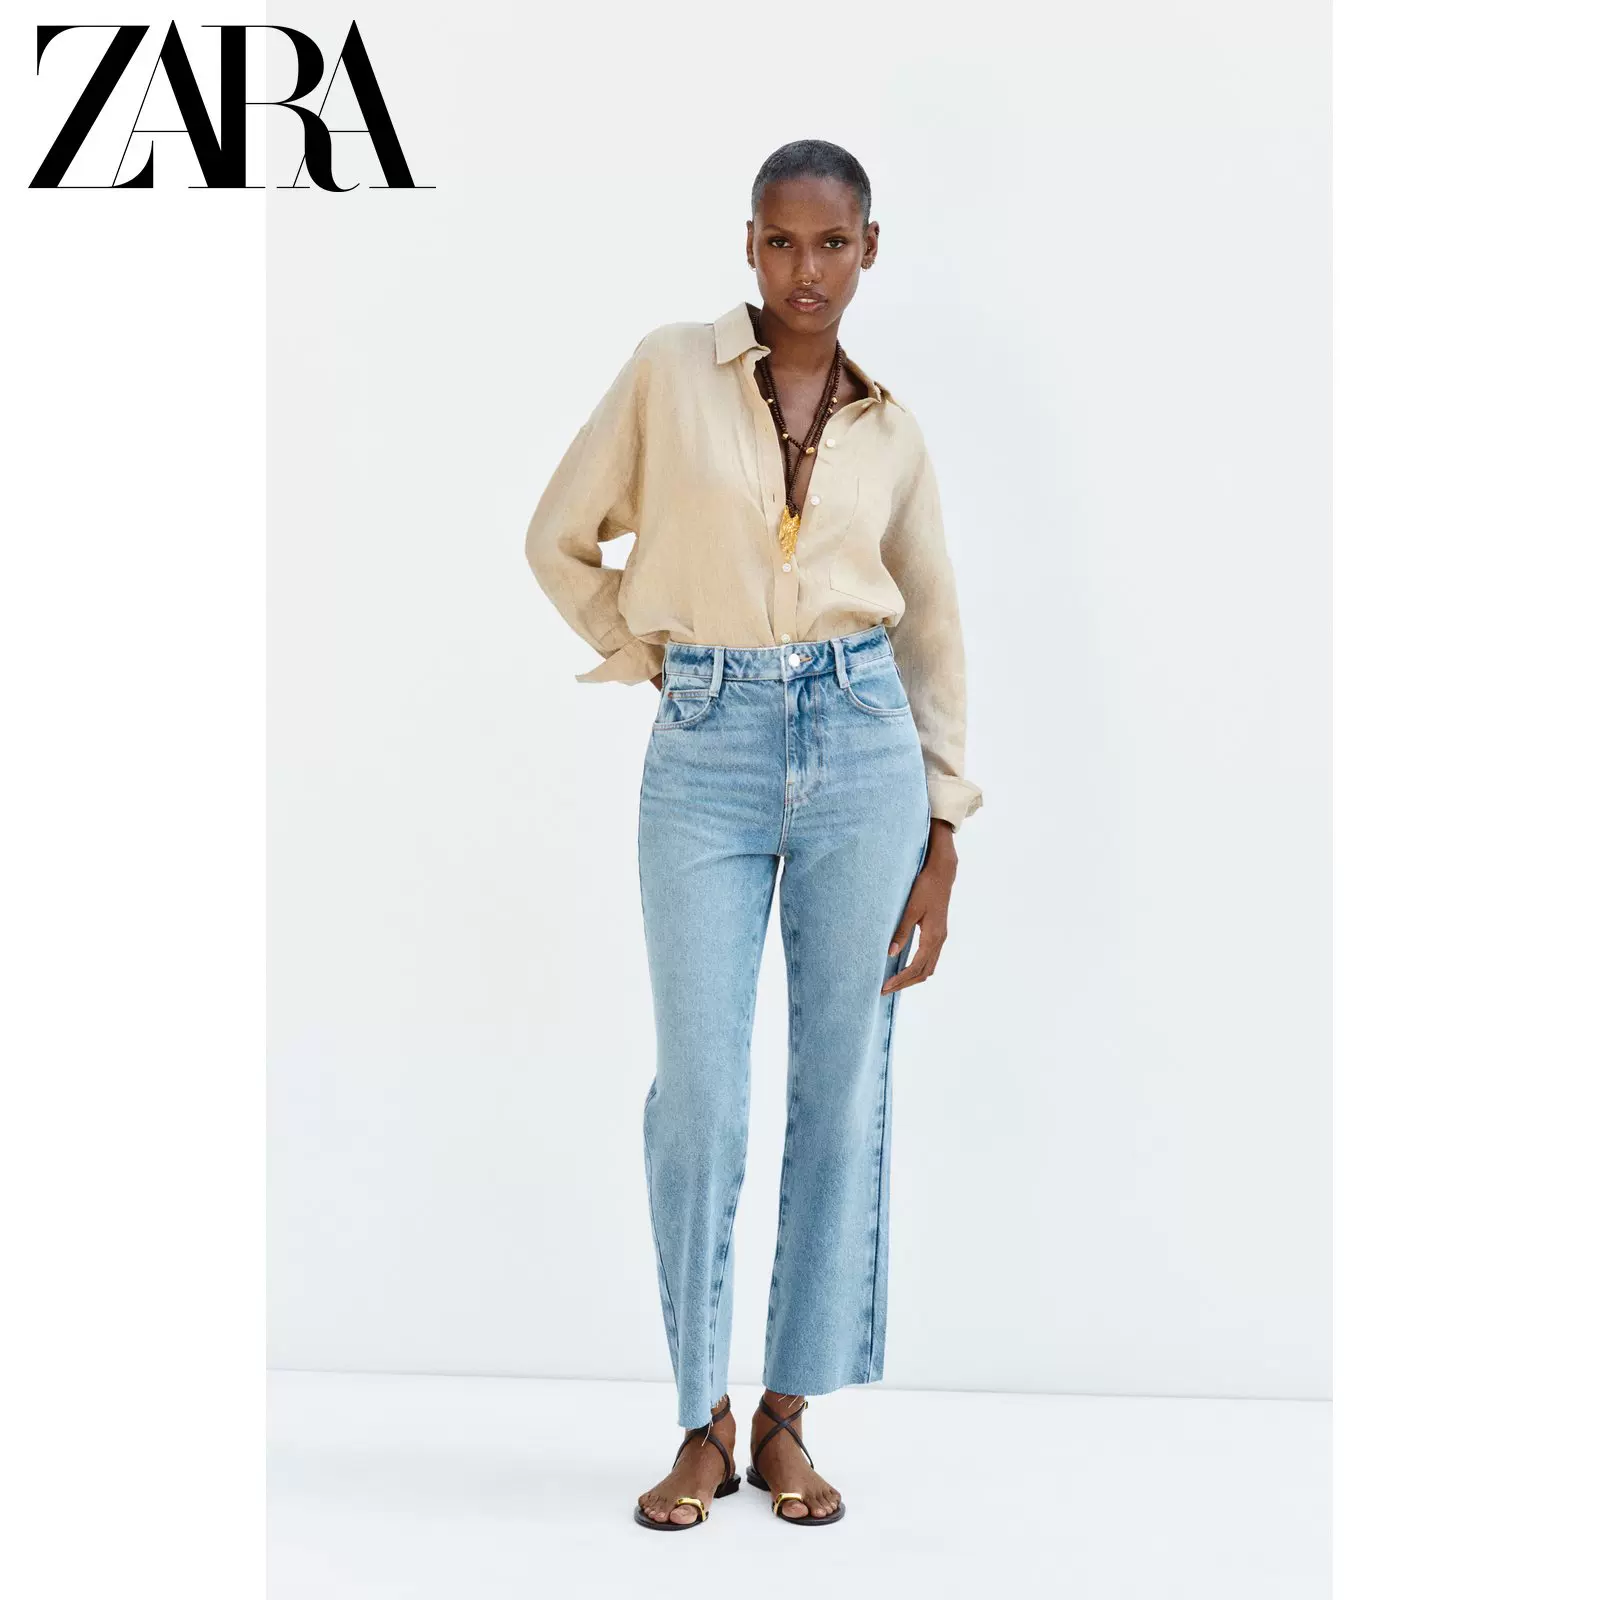 ZARA新款女装Z1975 高腰直筒及踝牛仔裤6164153 427-Taobao